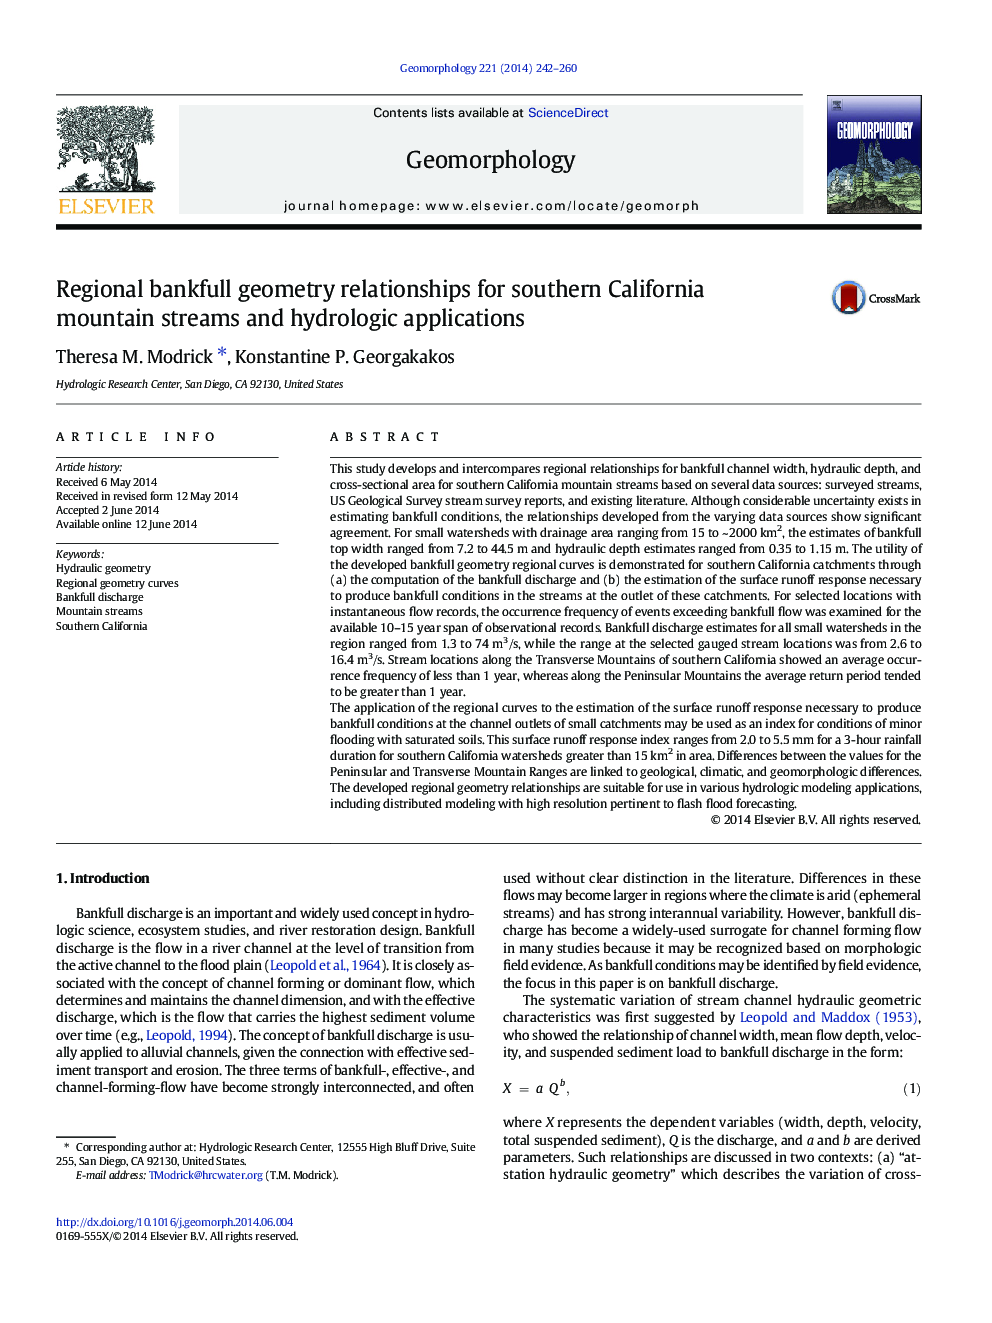 روابط هندسی منطقه ای بانکچی برای روابط کوهستانی جنوب کالیفرنیا و برنامه های کاربردی هیدرولوژیکی 